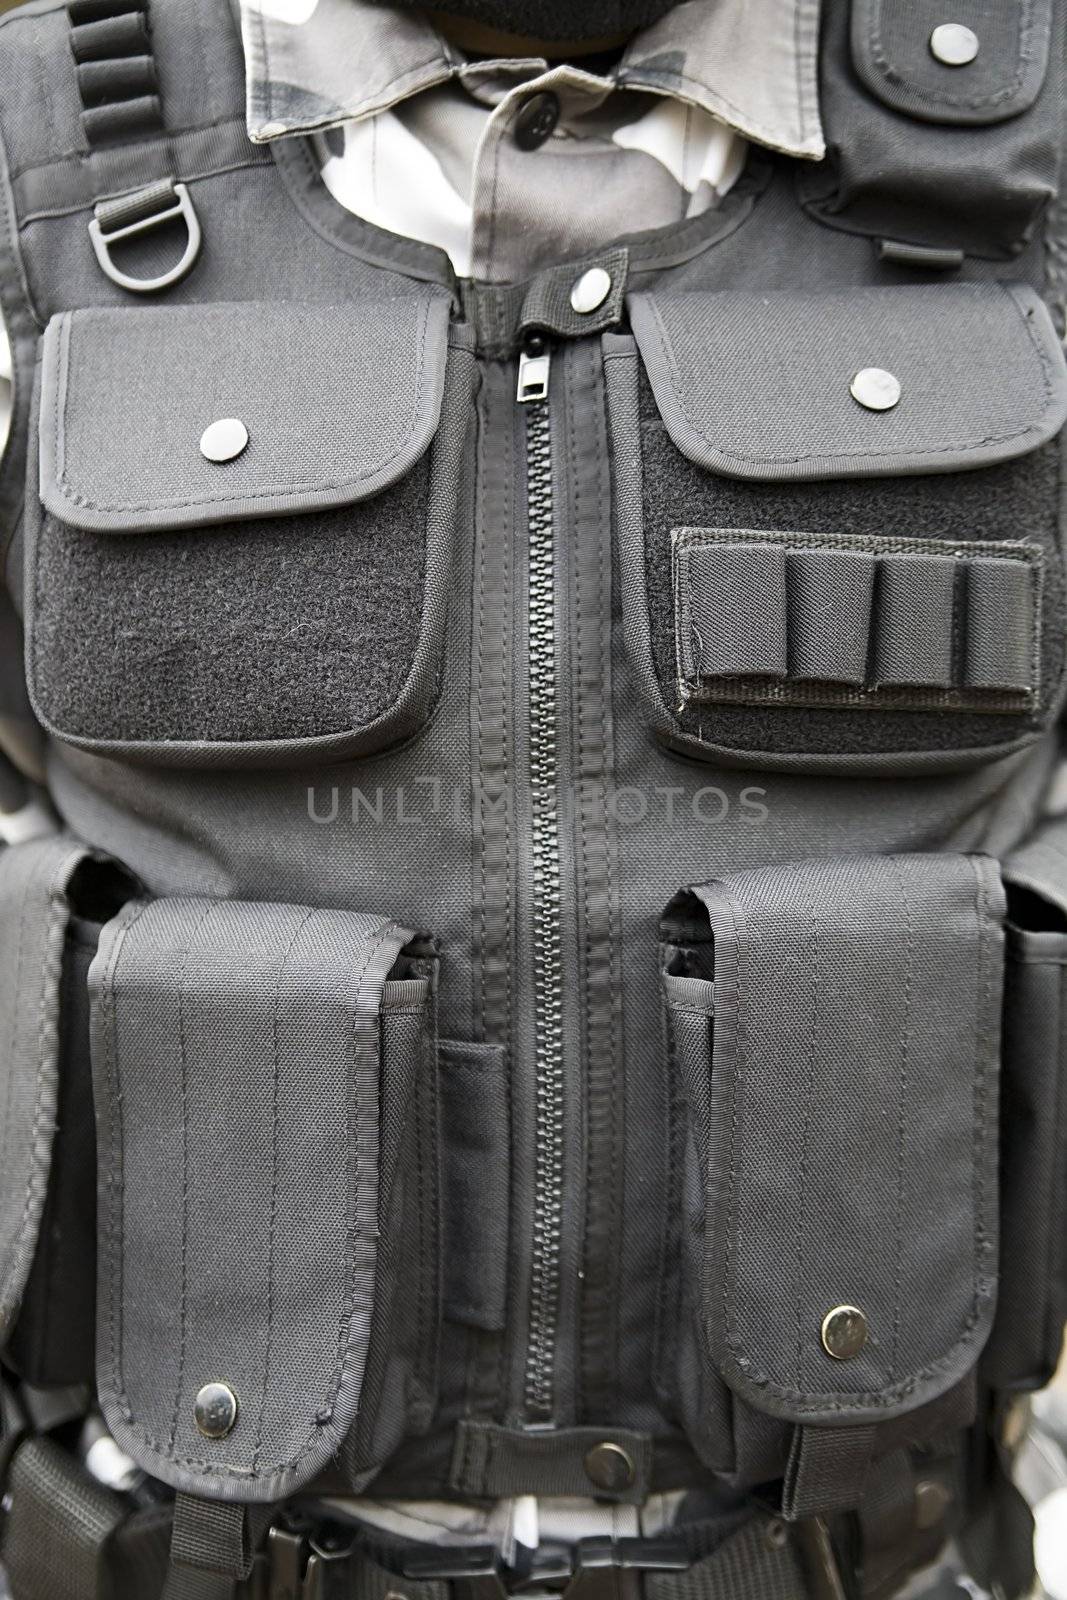 black S.W.A.T vest - part of soldier's equipment